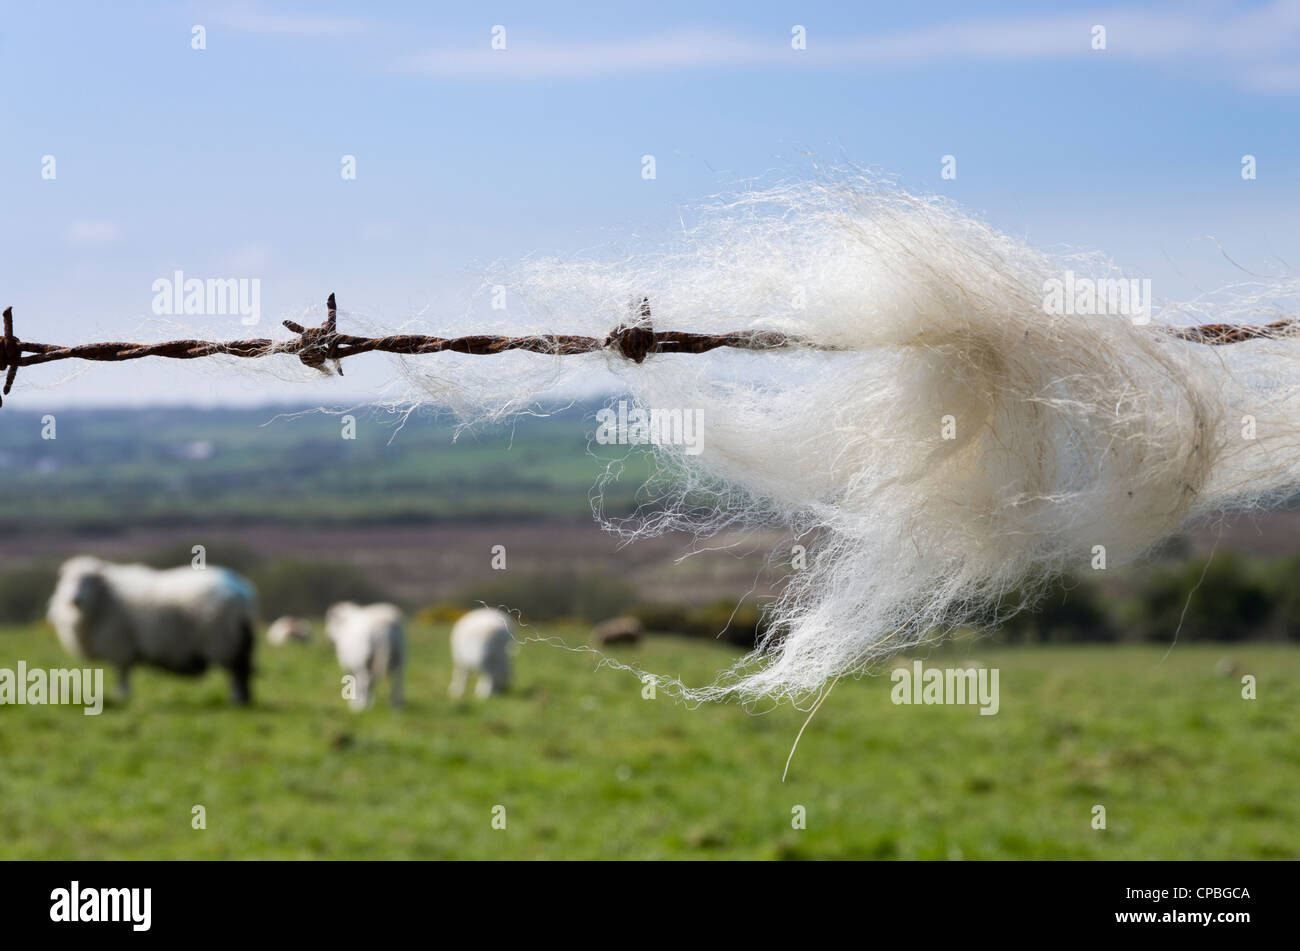 Schafwolle gefangen auf einem Stacheldrahtzaun mit Schafen in einem Bauernhof Feld darüber hinaus. Wales UK Großbritannien Stockfoto